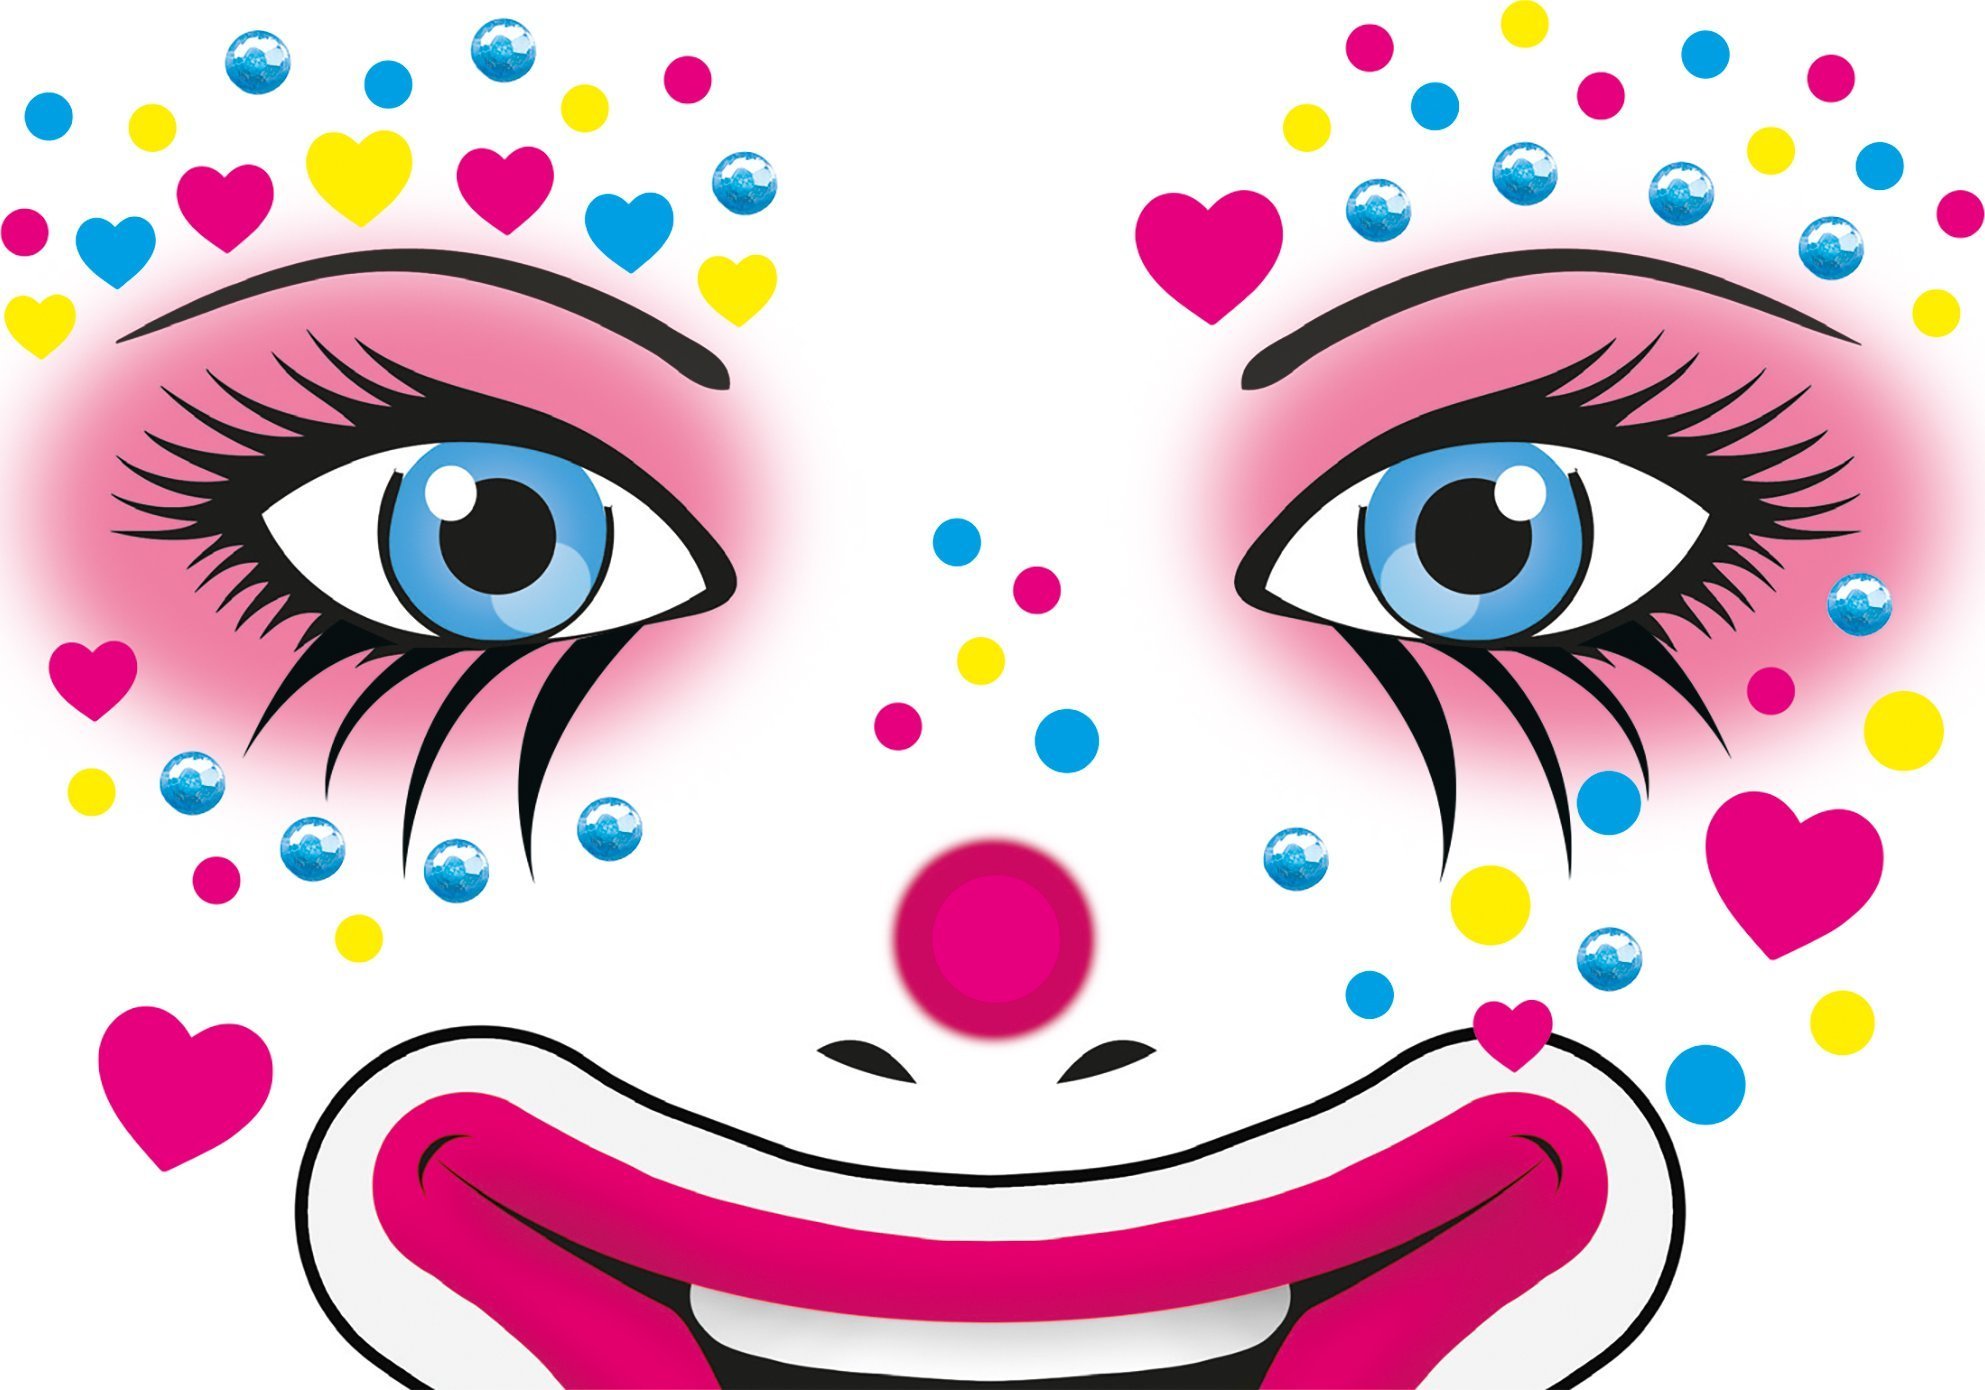 HERMA Clown Face autocolant Art Annie